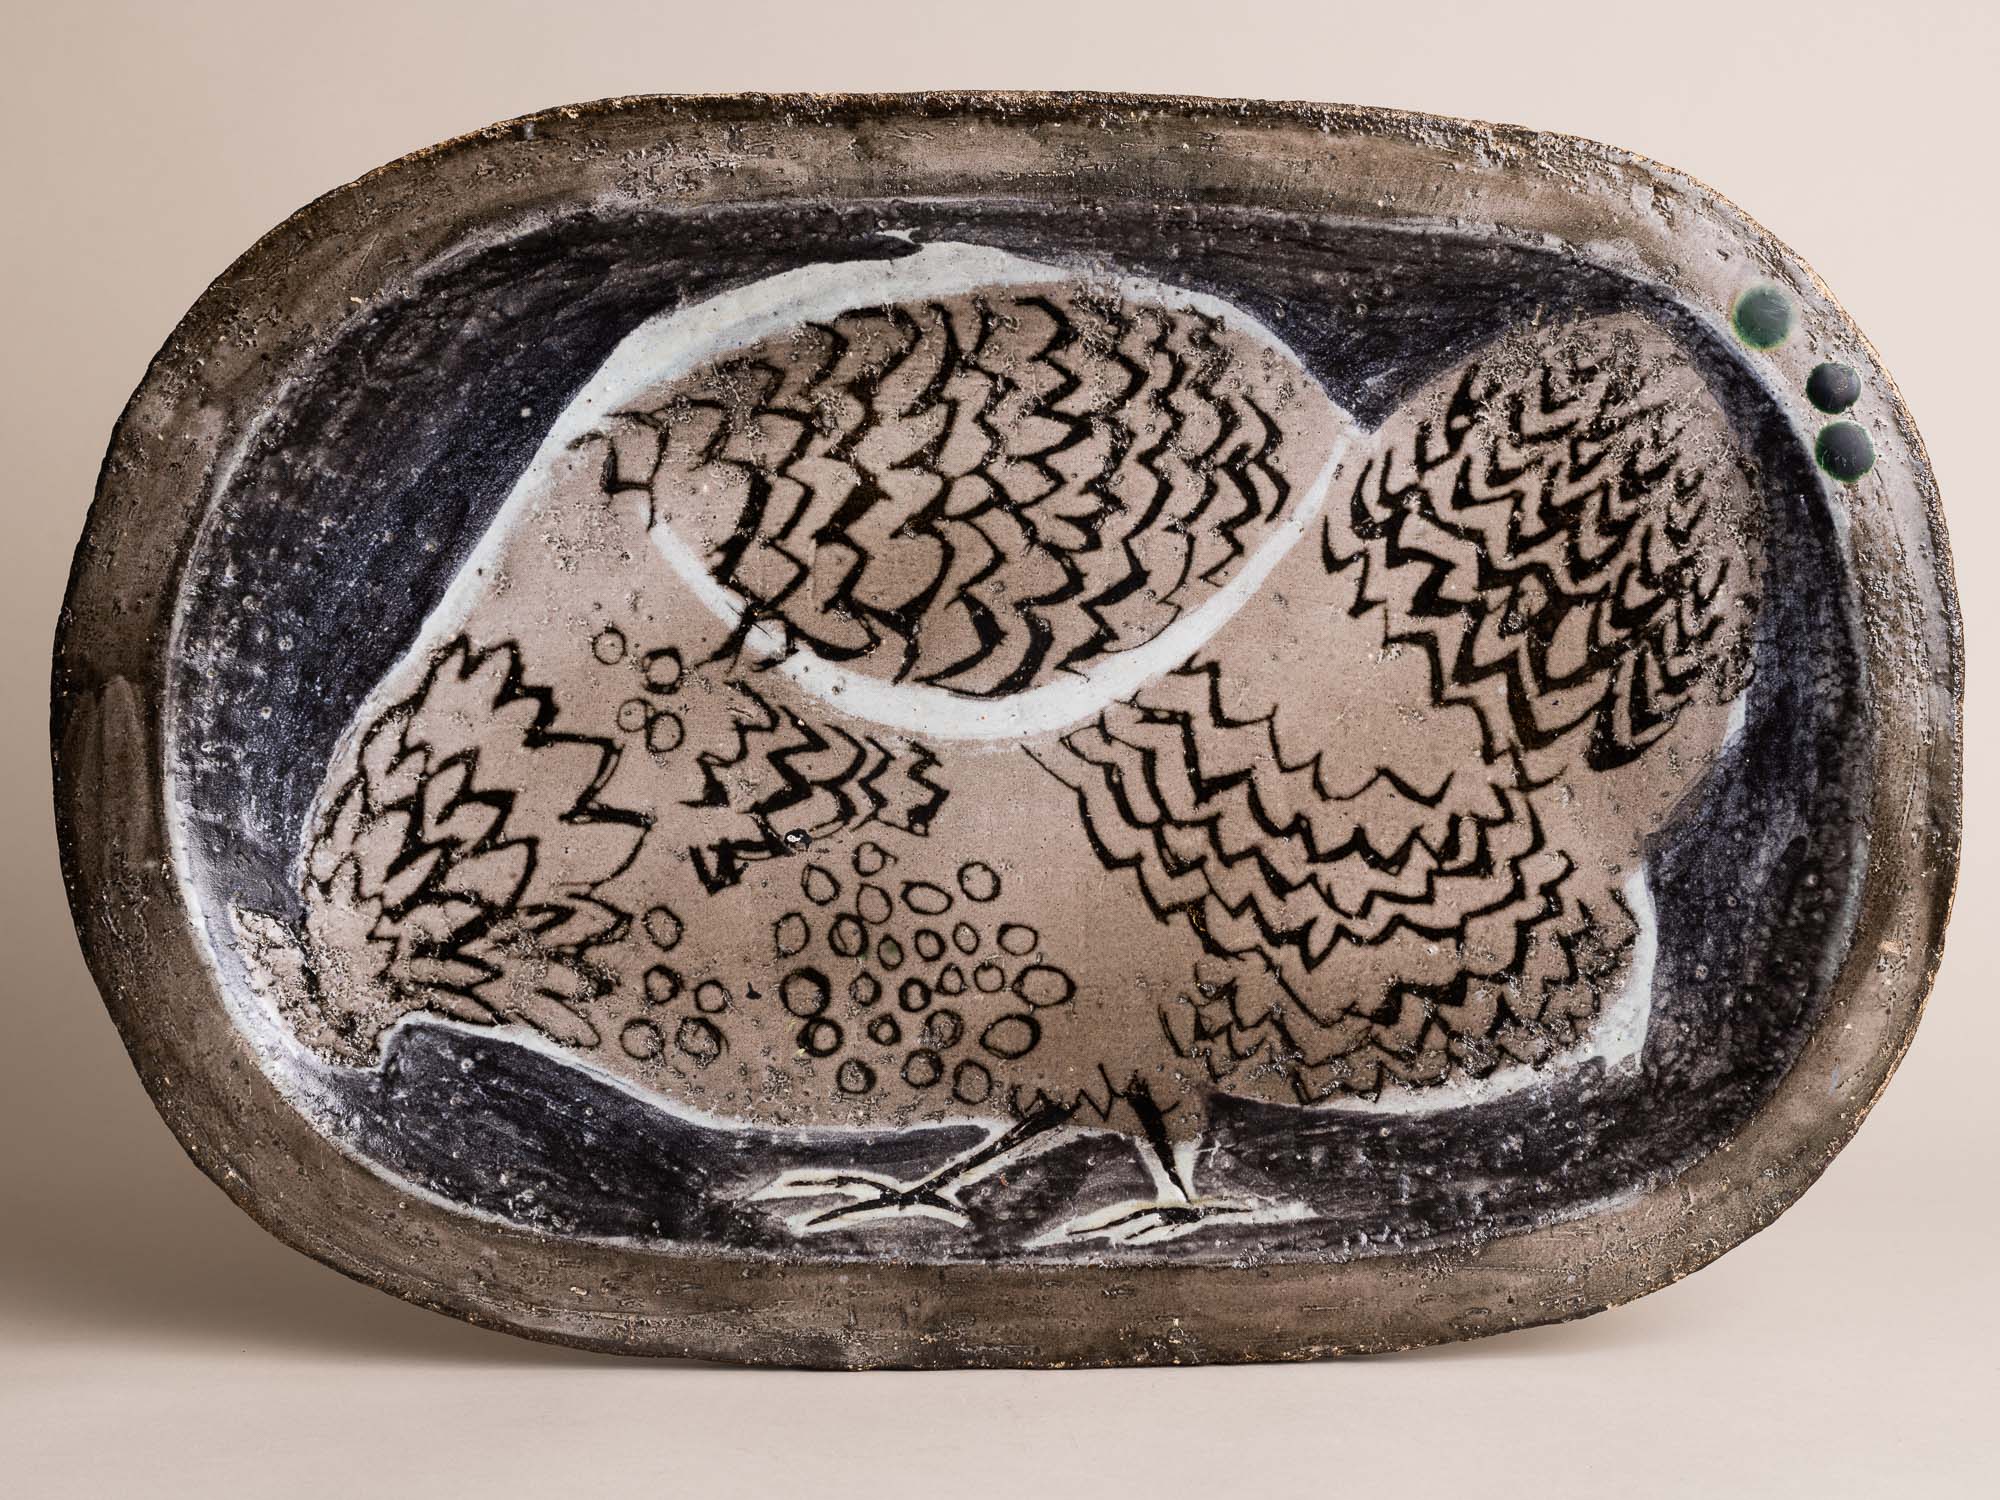 Exceptionnel plat à décor zoomorphe par Aline Favre, Suisse (1953)..Oustanding huge dish with zoomorphic pattern by Aline Favre, Switzerland (1953)